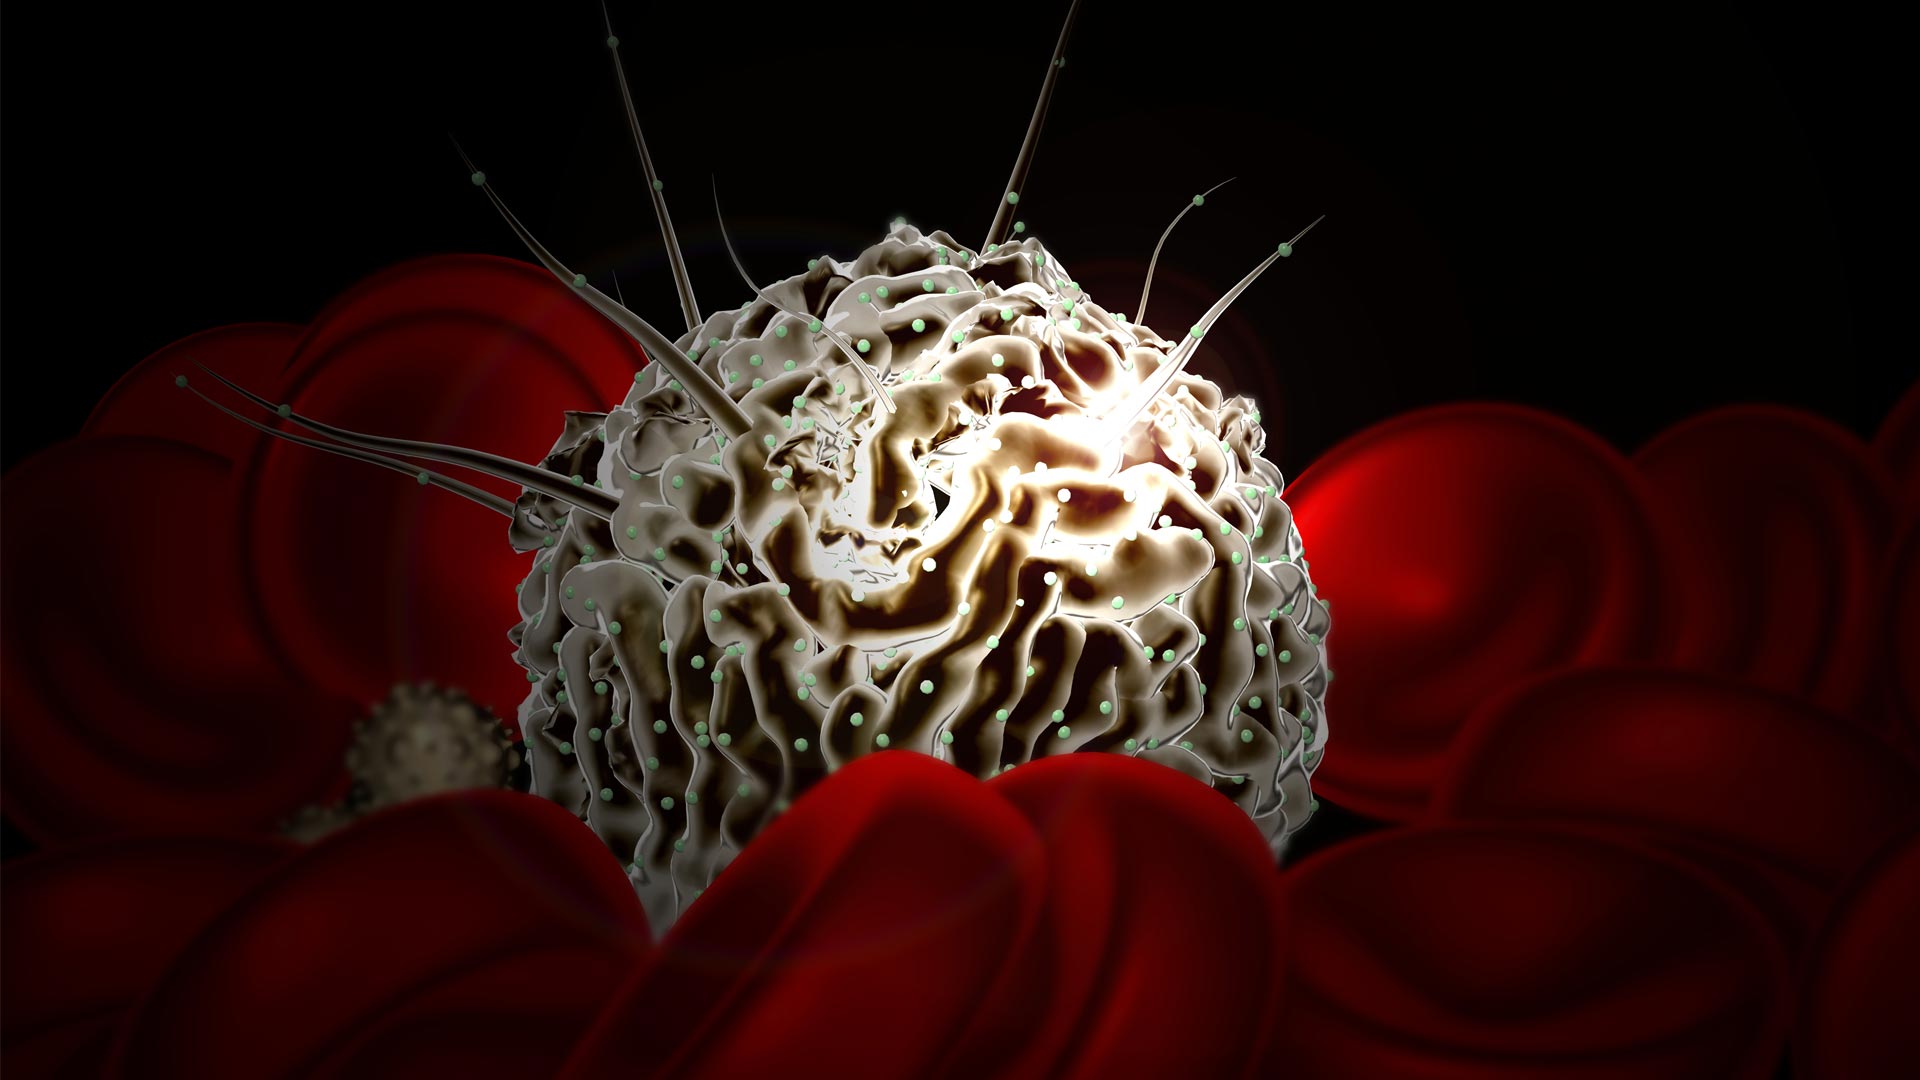 Mobilizing Blood-forming Stem Cells